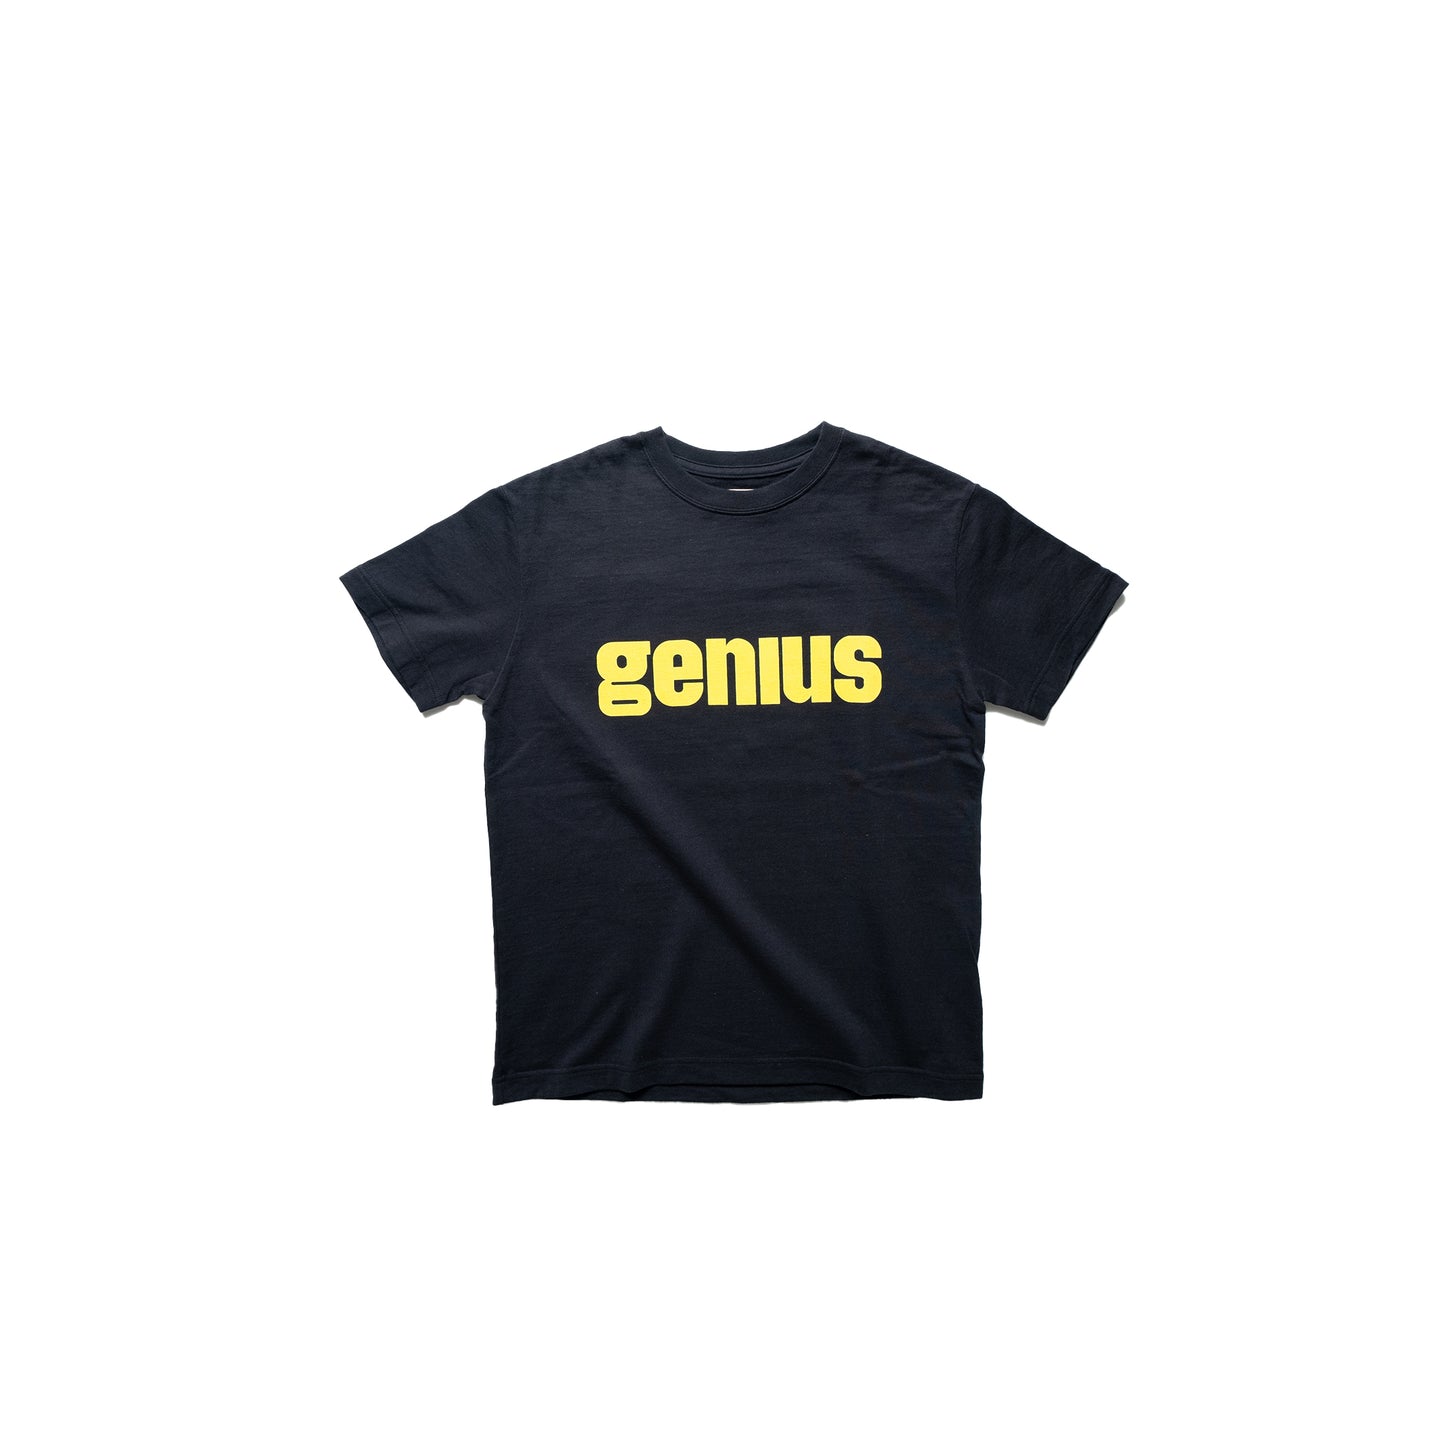 海外ブランド 今季発売のミリタリーエンブロイダリーシャツ(GENIUS